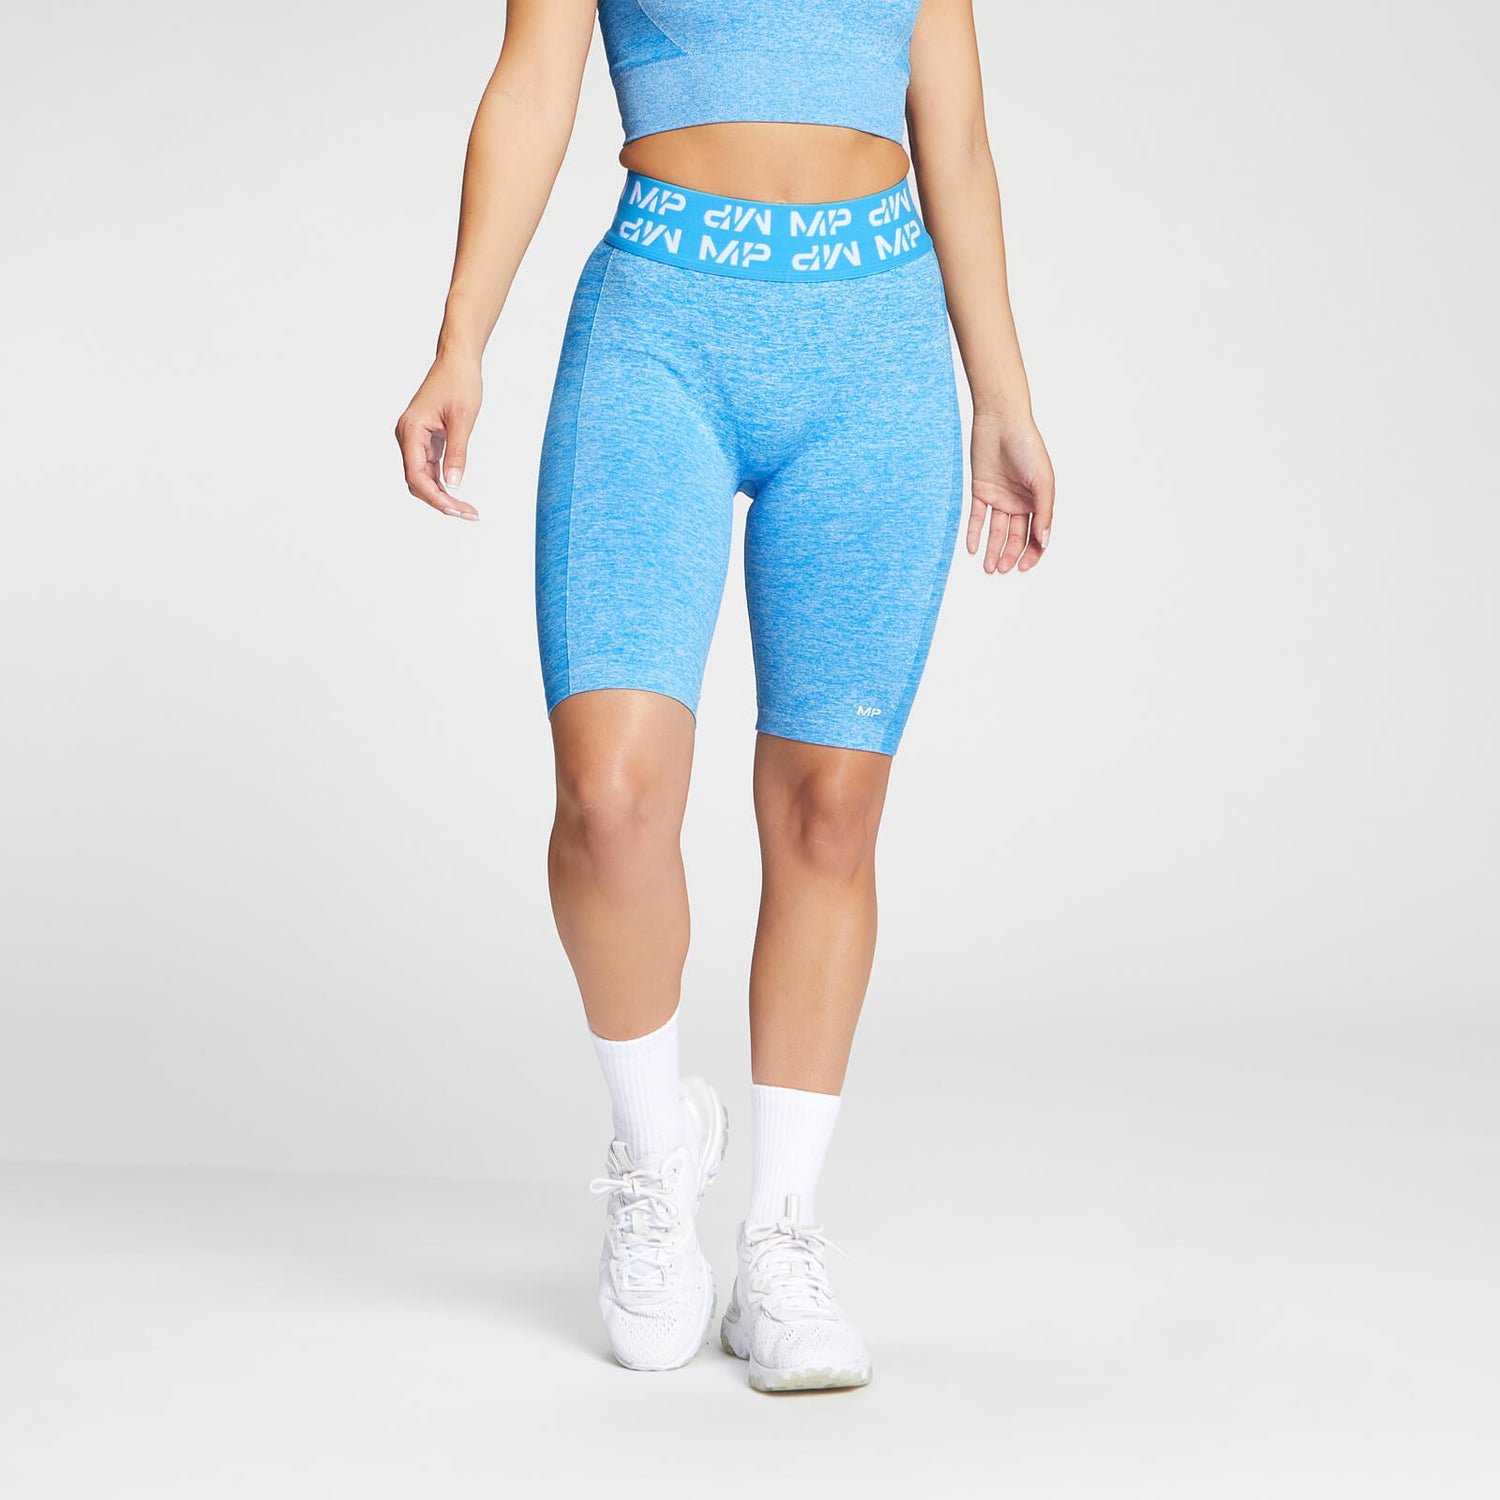 Pantalón corto de ciclismo Curve para mujer de MP - Azul brillante - XS